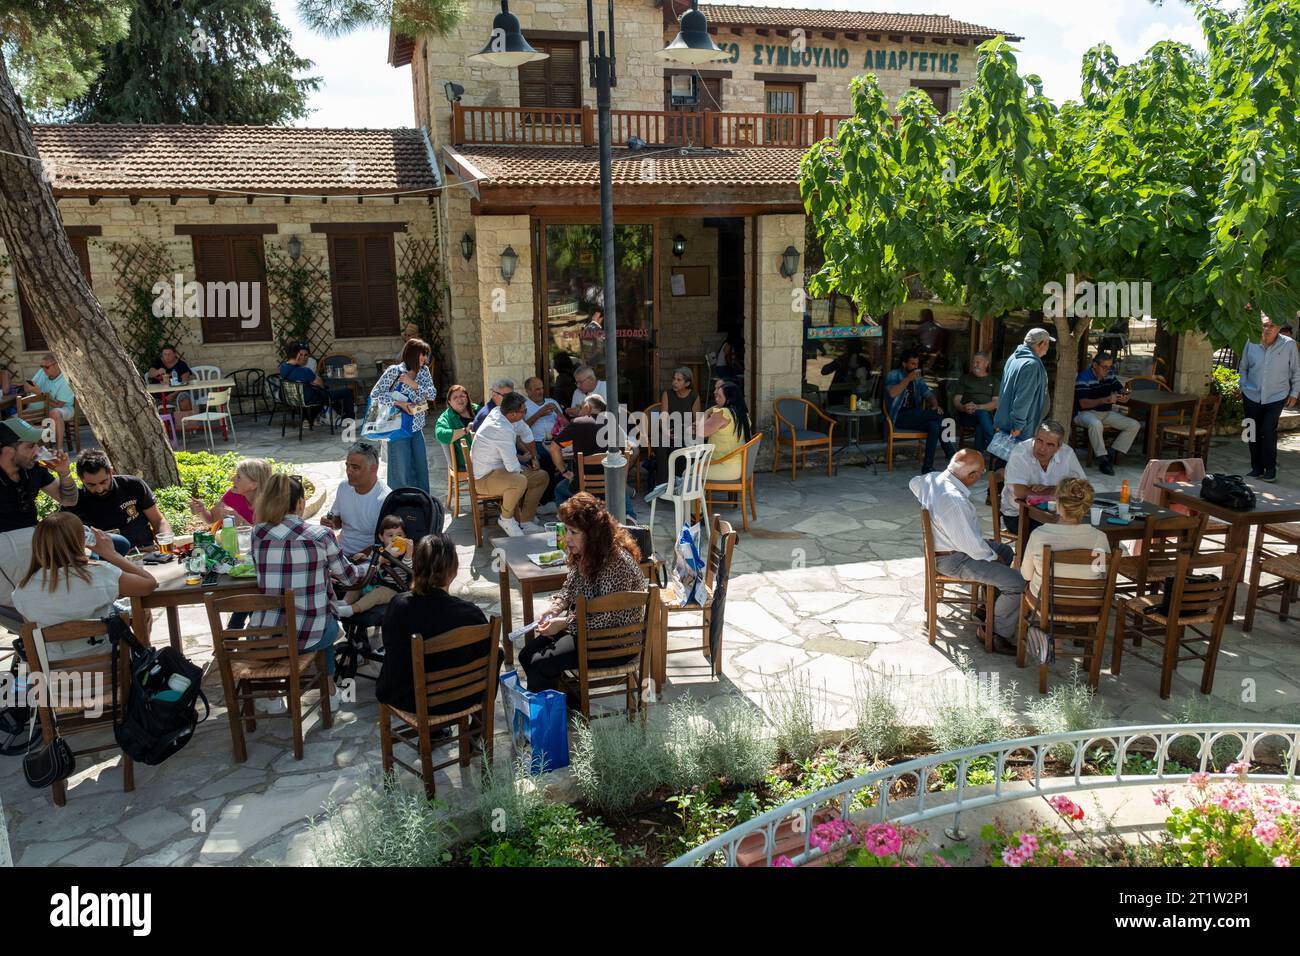 Les gens mangent et boivent dans un restaurant pendant la fête de l'olivier Amargeti, République de Chypre. Banque D'Images